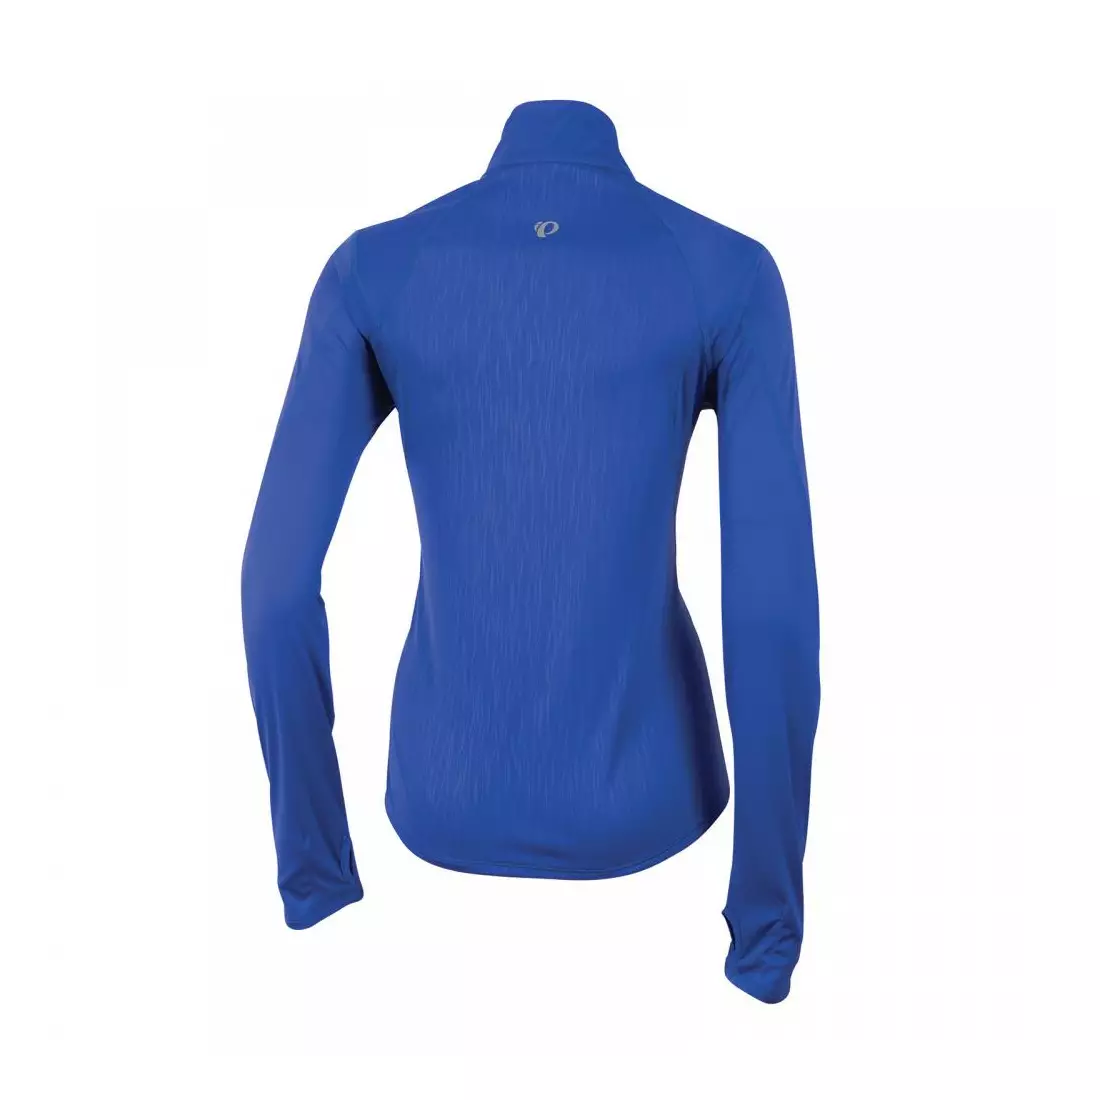 PEARL IZUMI – 12221403-4CT FLY LS – Damen-Lauf-T-Shirt d/r, Farbe: Blau